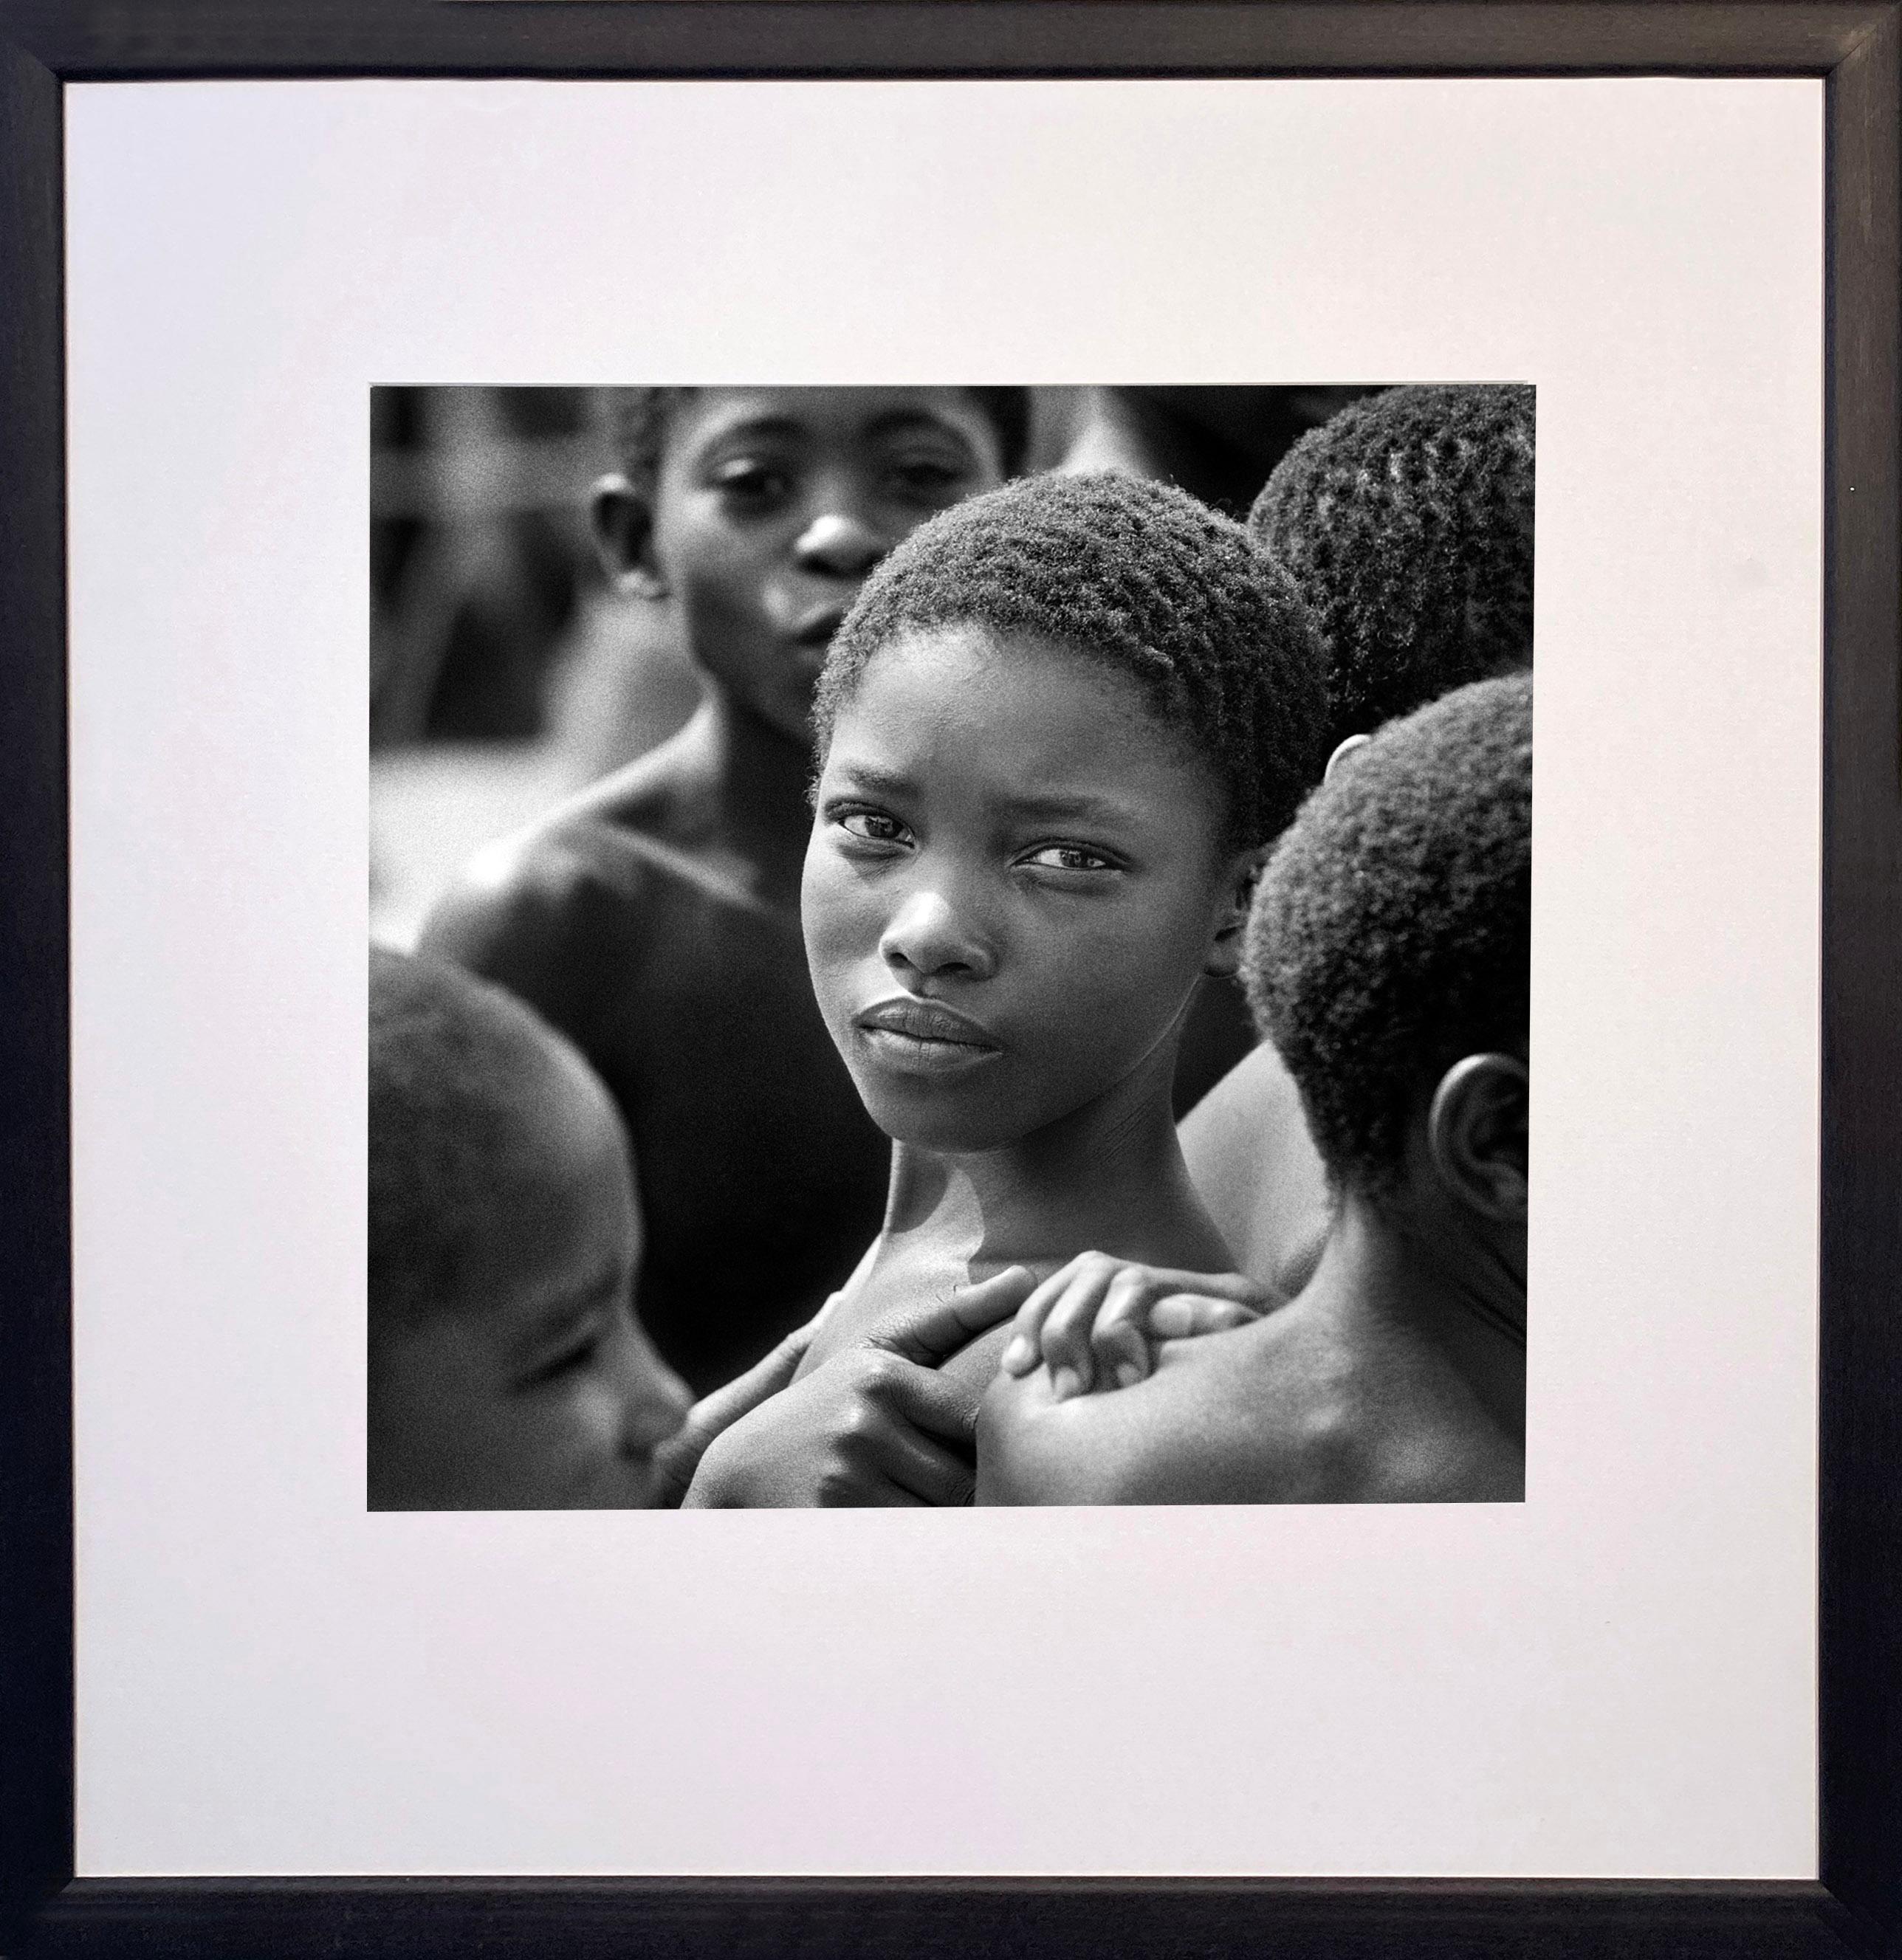 Der Junge von Tsonga - James Sparshatt - Ein Porträtfotografie aus Afrika